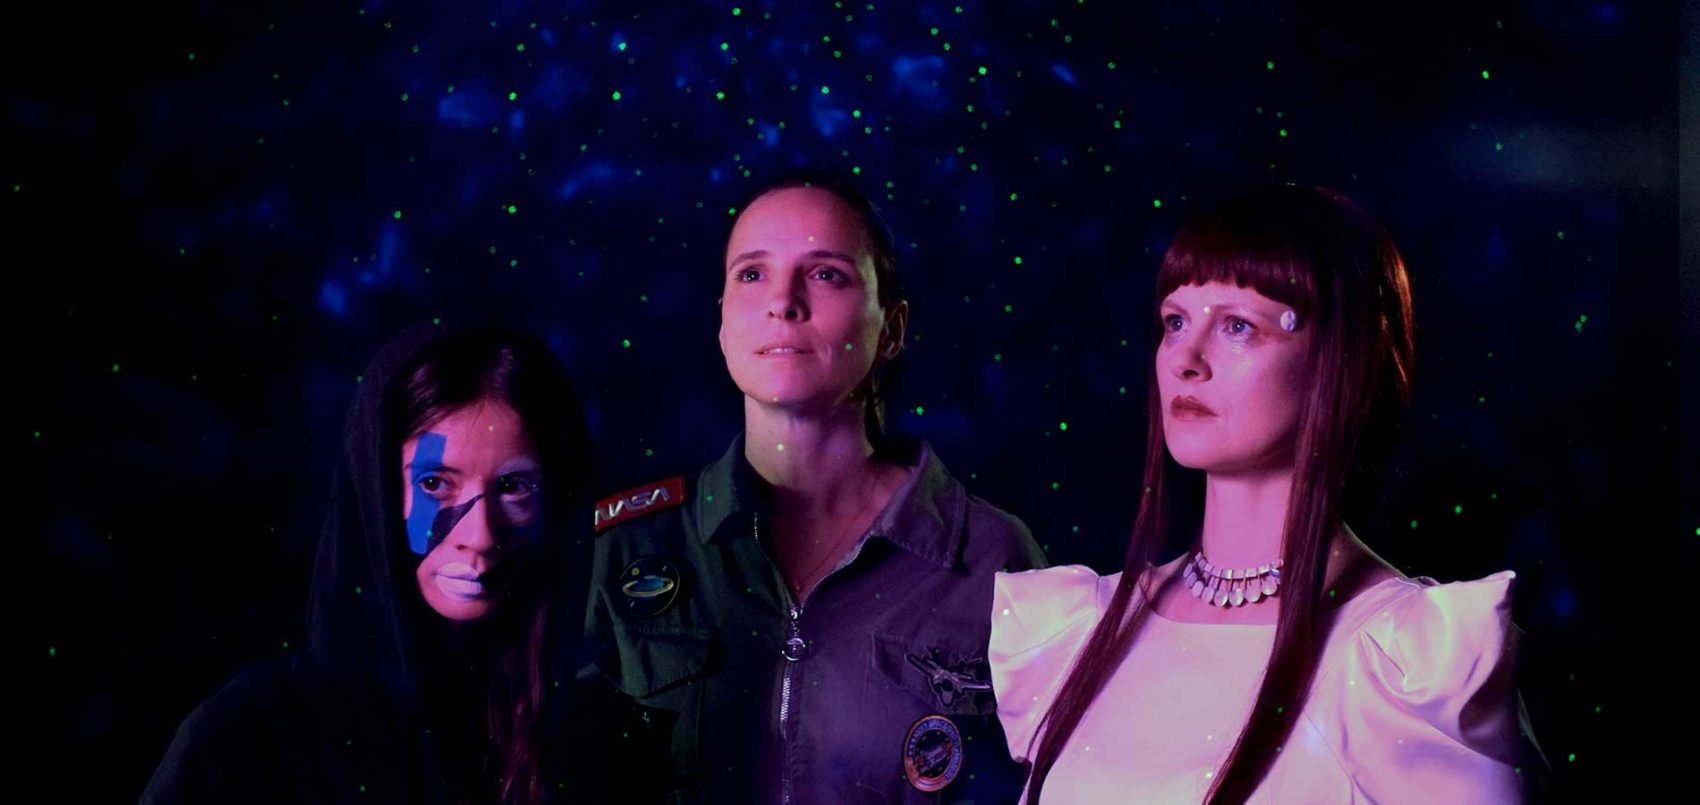 Portrait de trois soeurs avec des costumes de science fiction